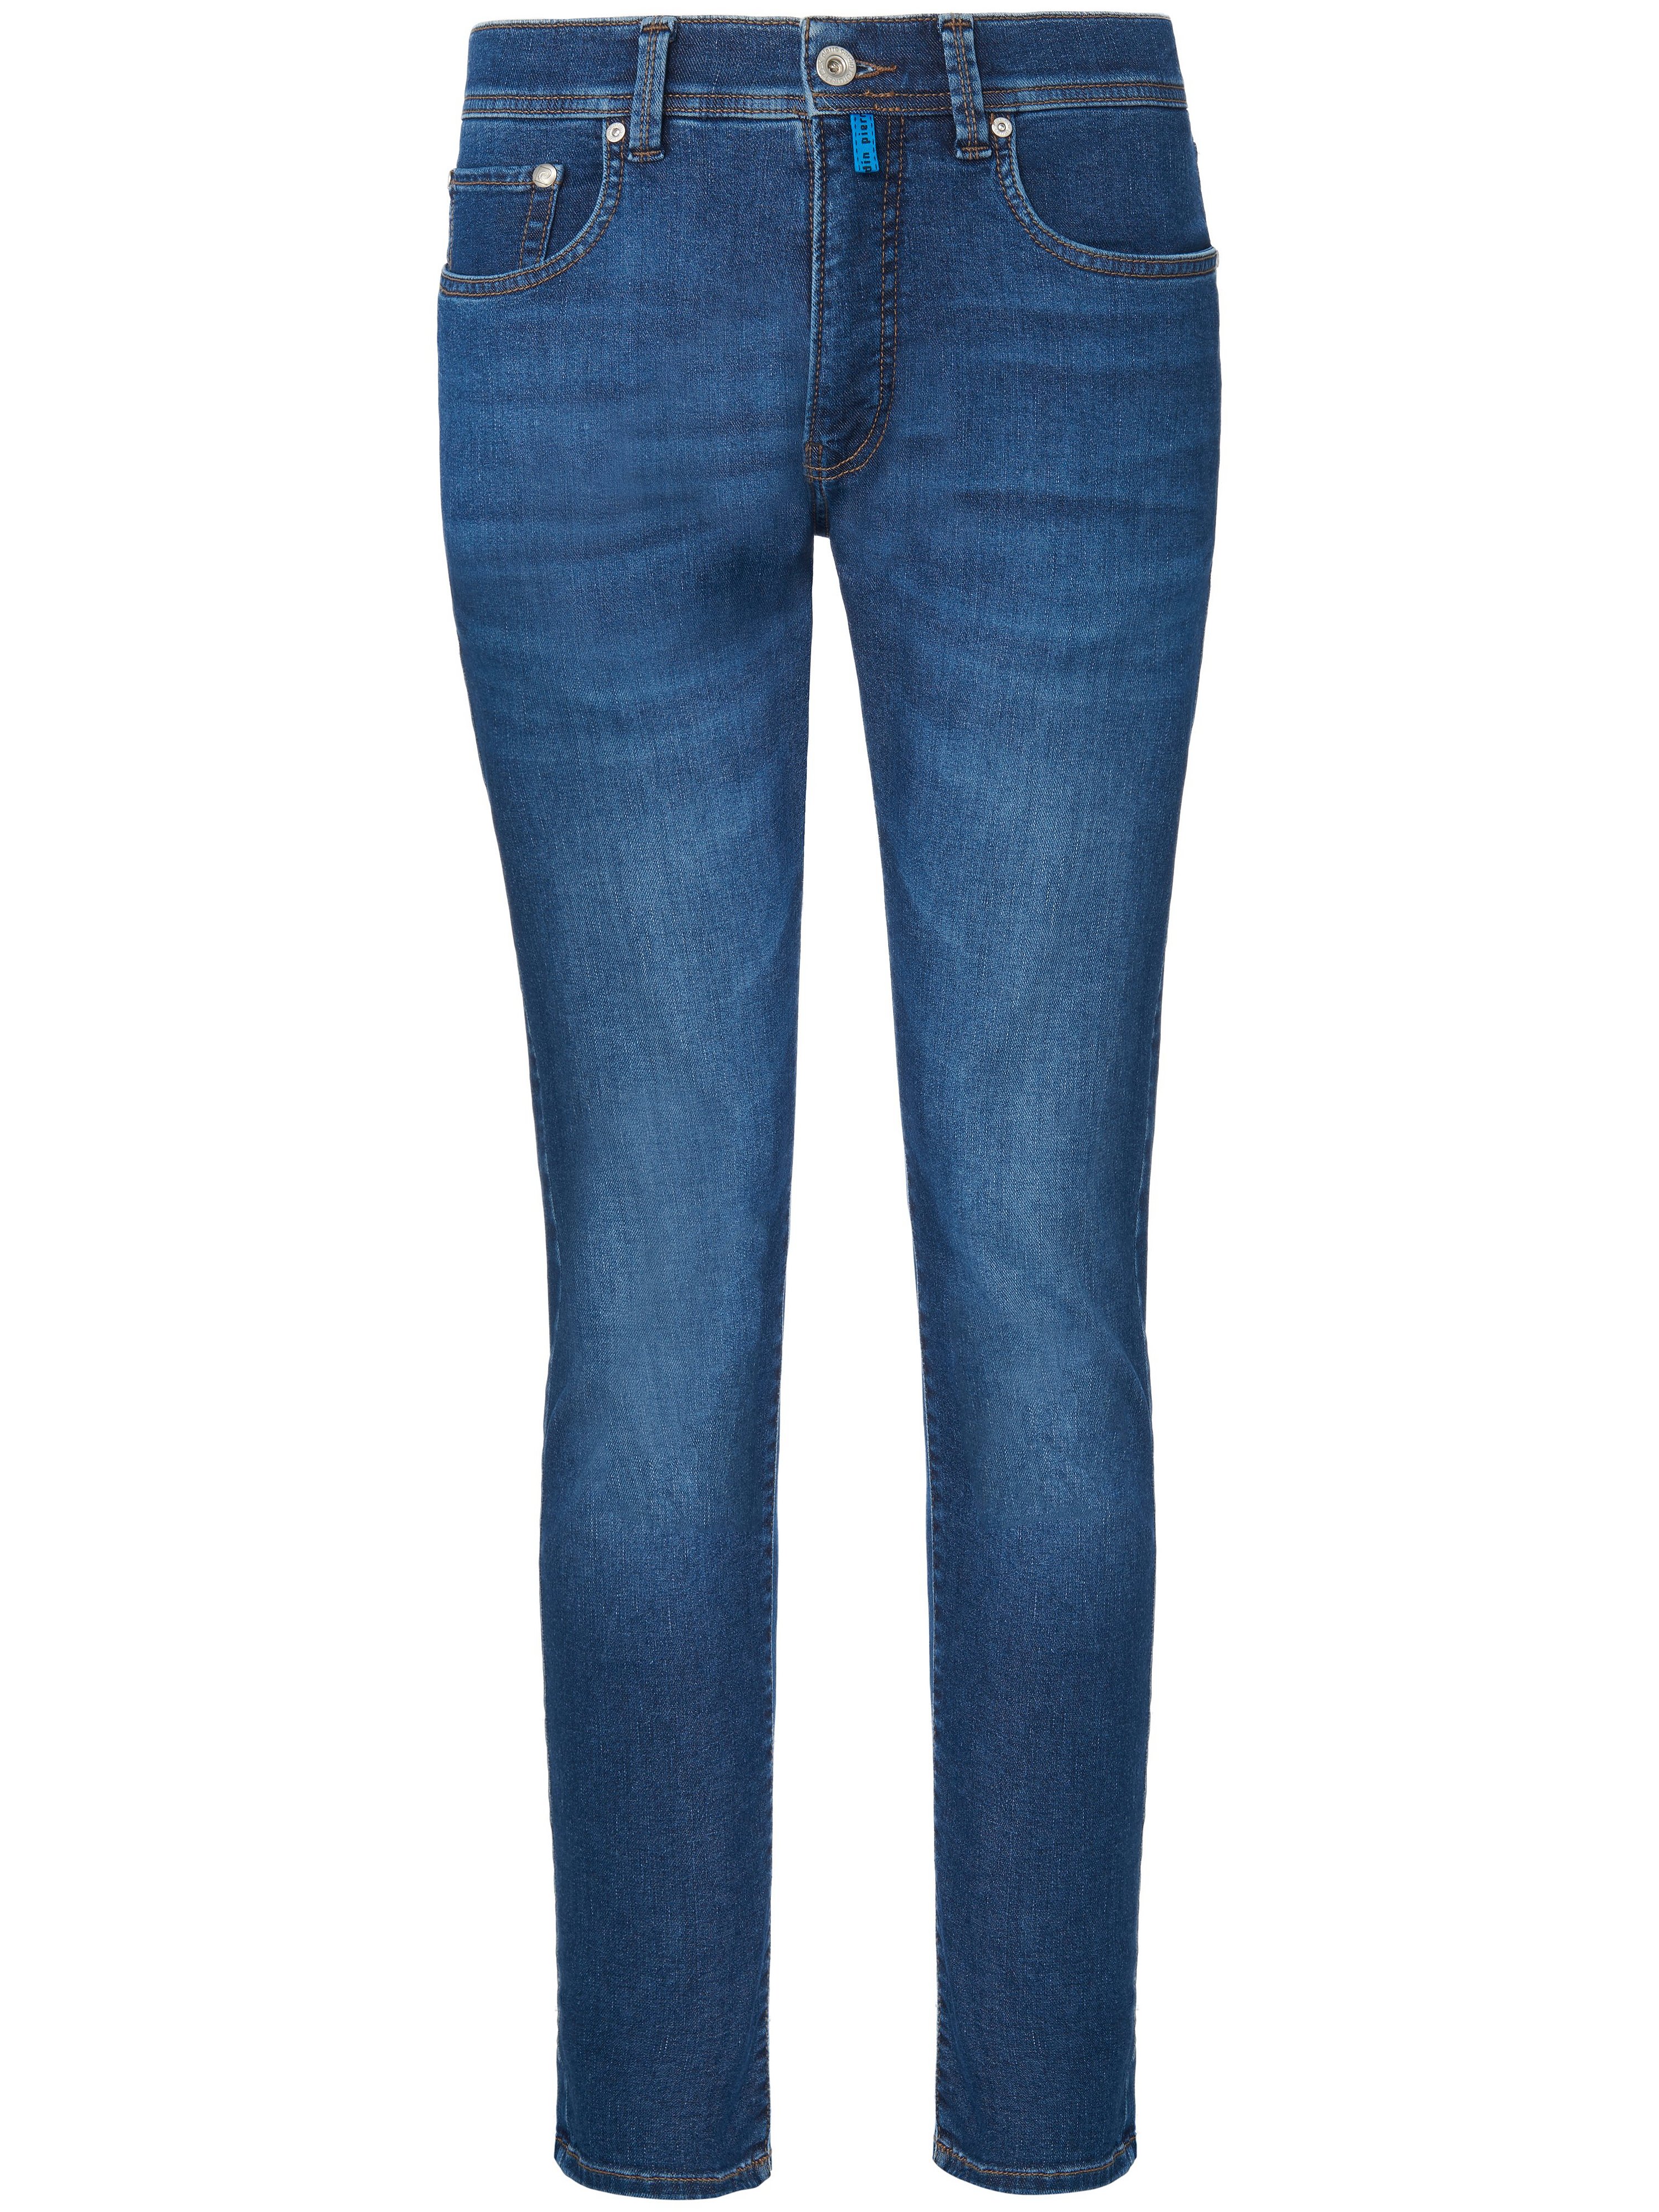 Jeans model Lyon Tapered Van Pierre Cardin denim